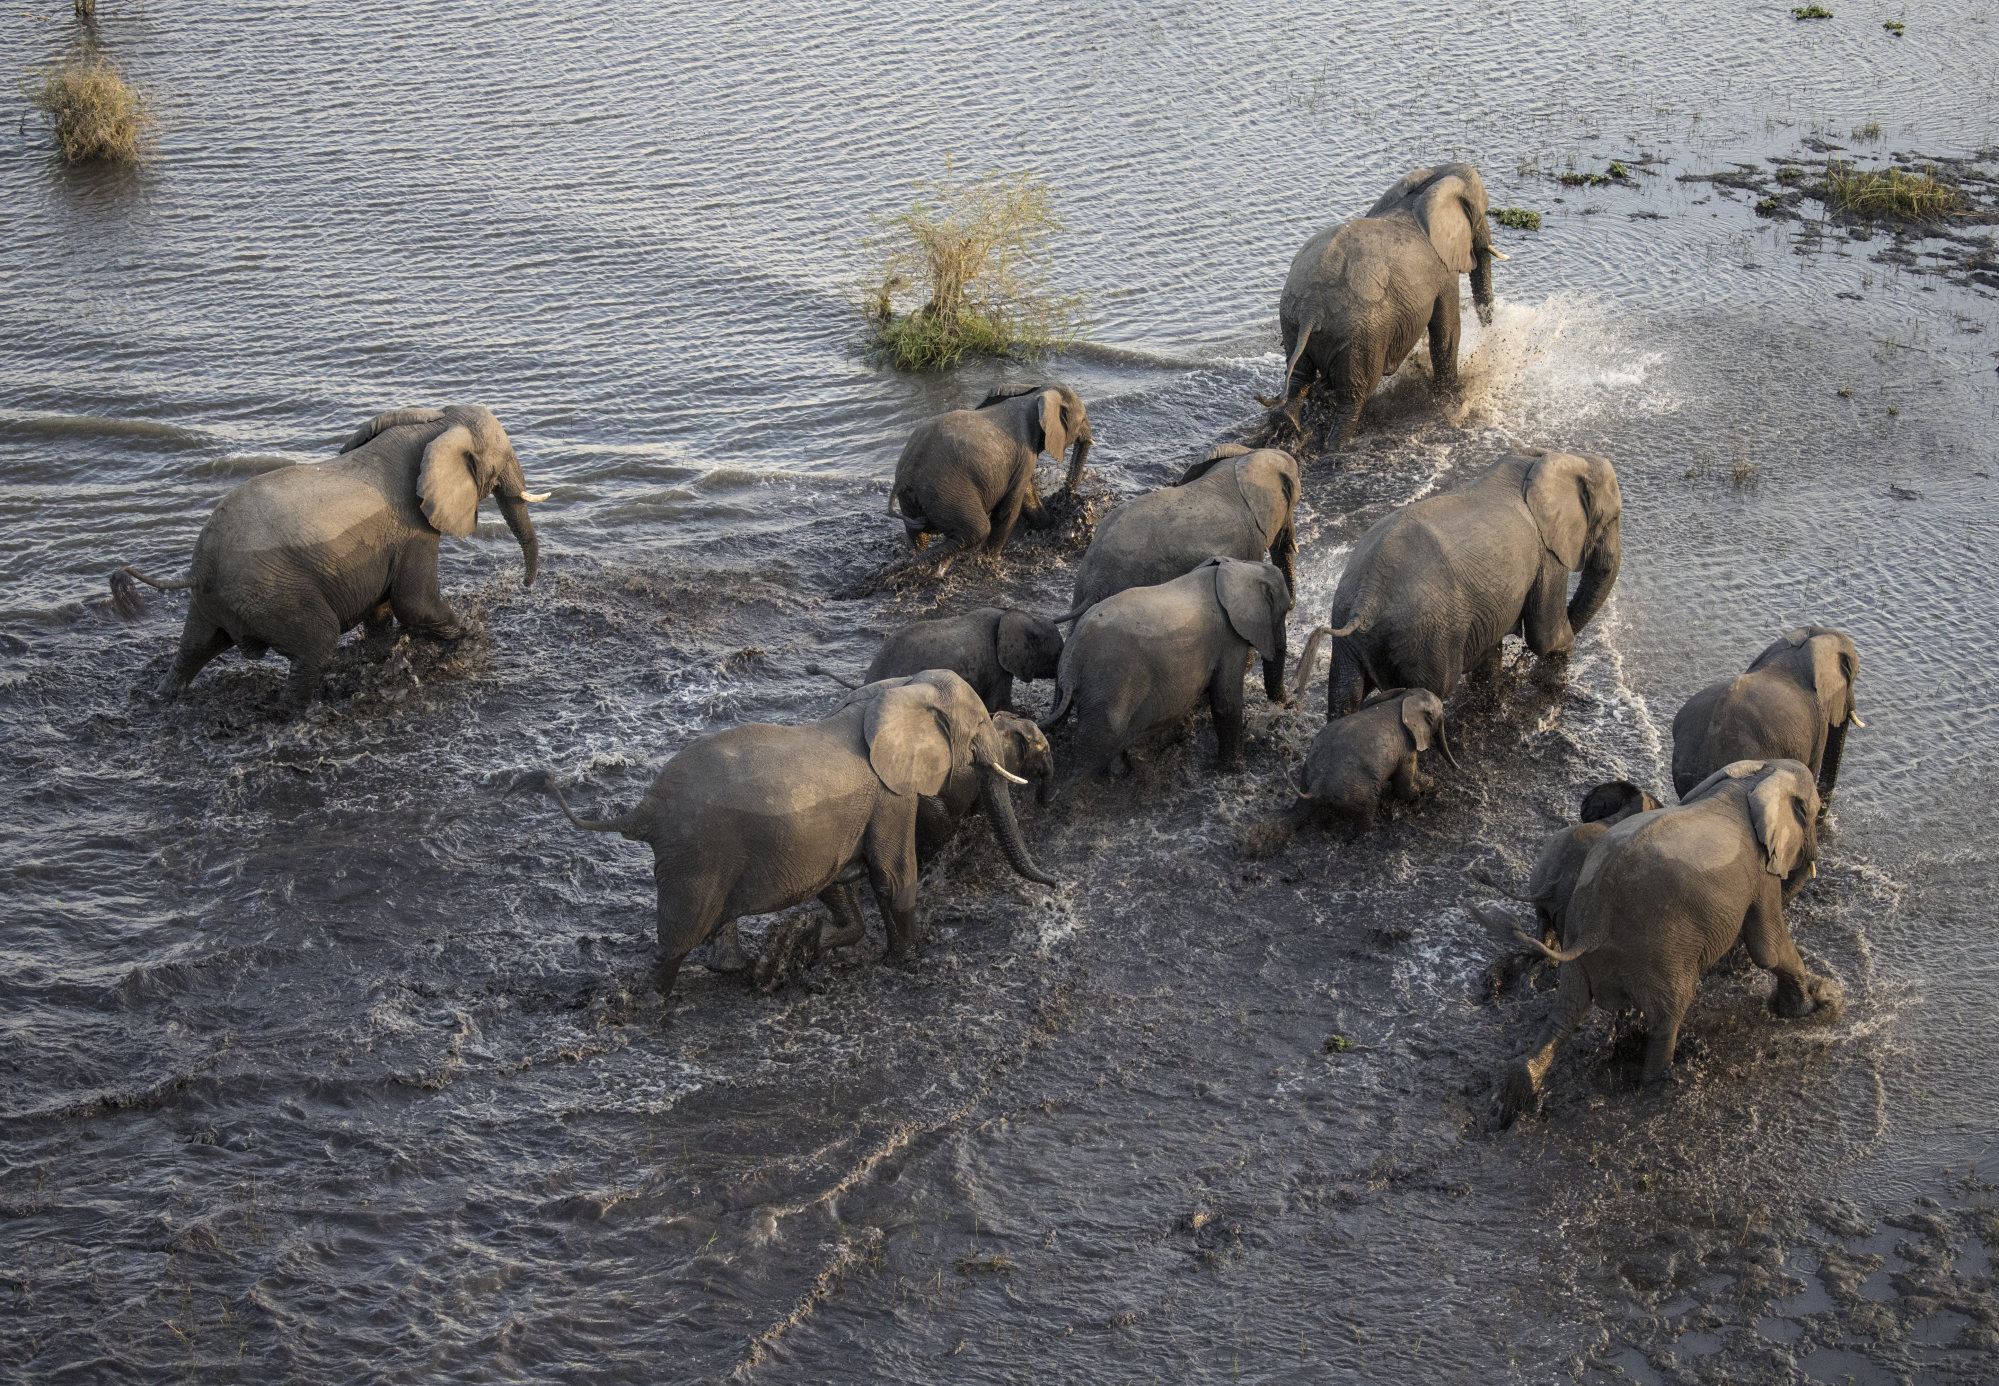 Elephants in Malawi’s Liwonde National Park. Photo: Daniel Allen